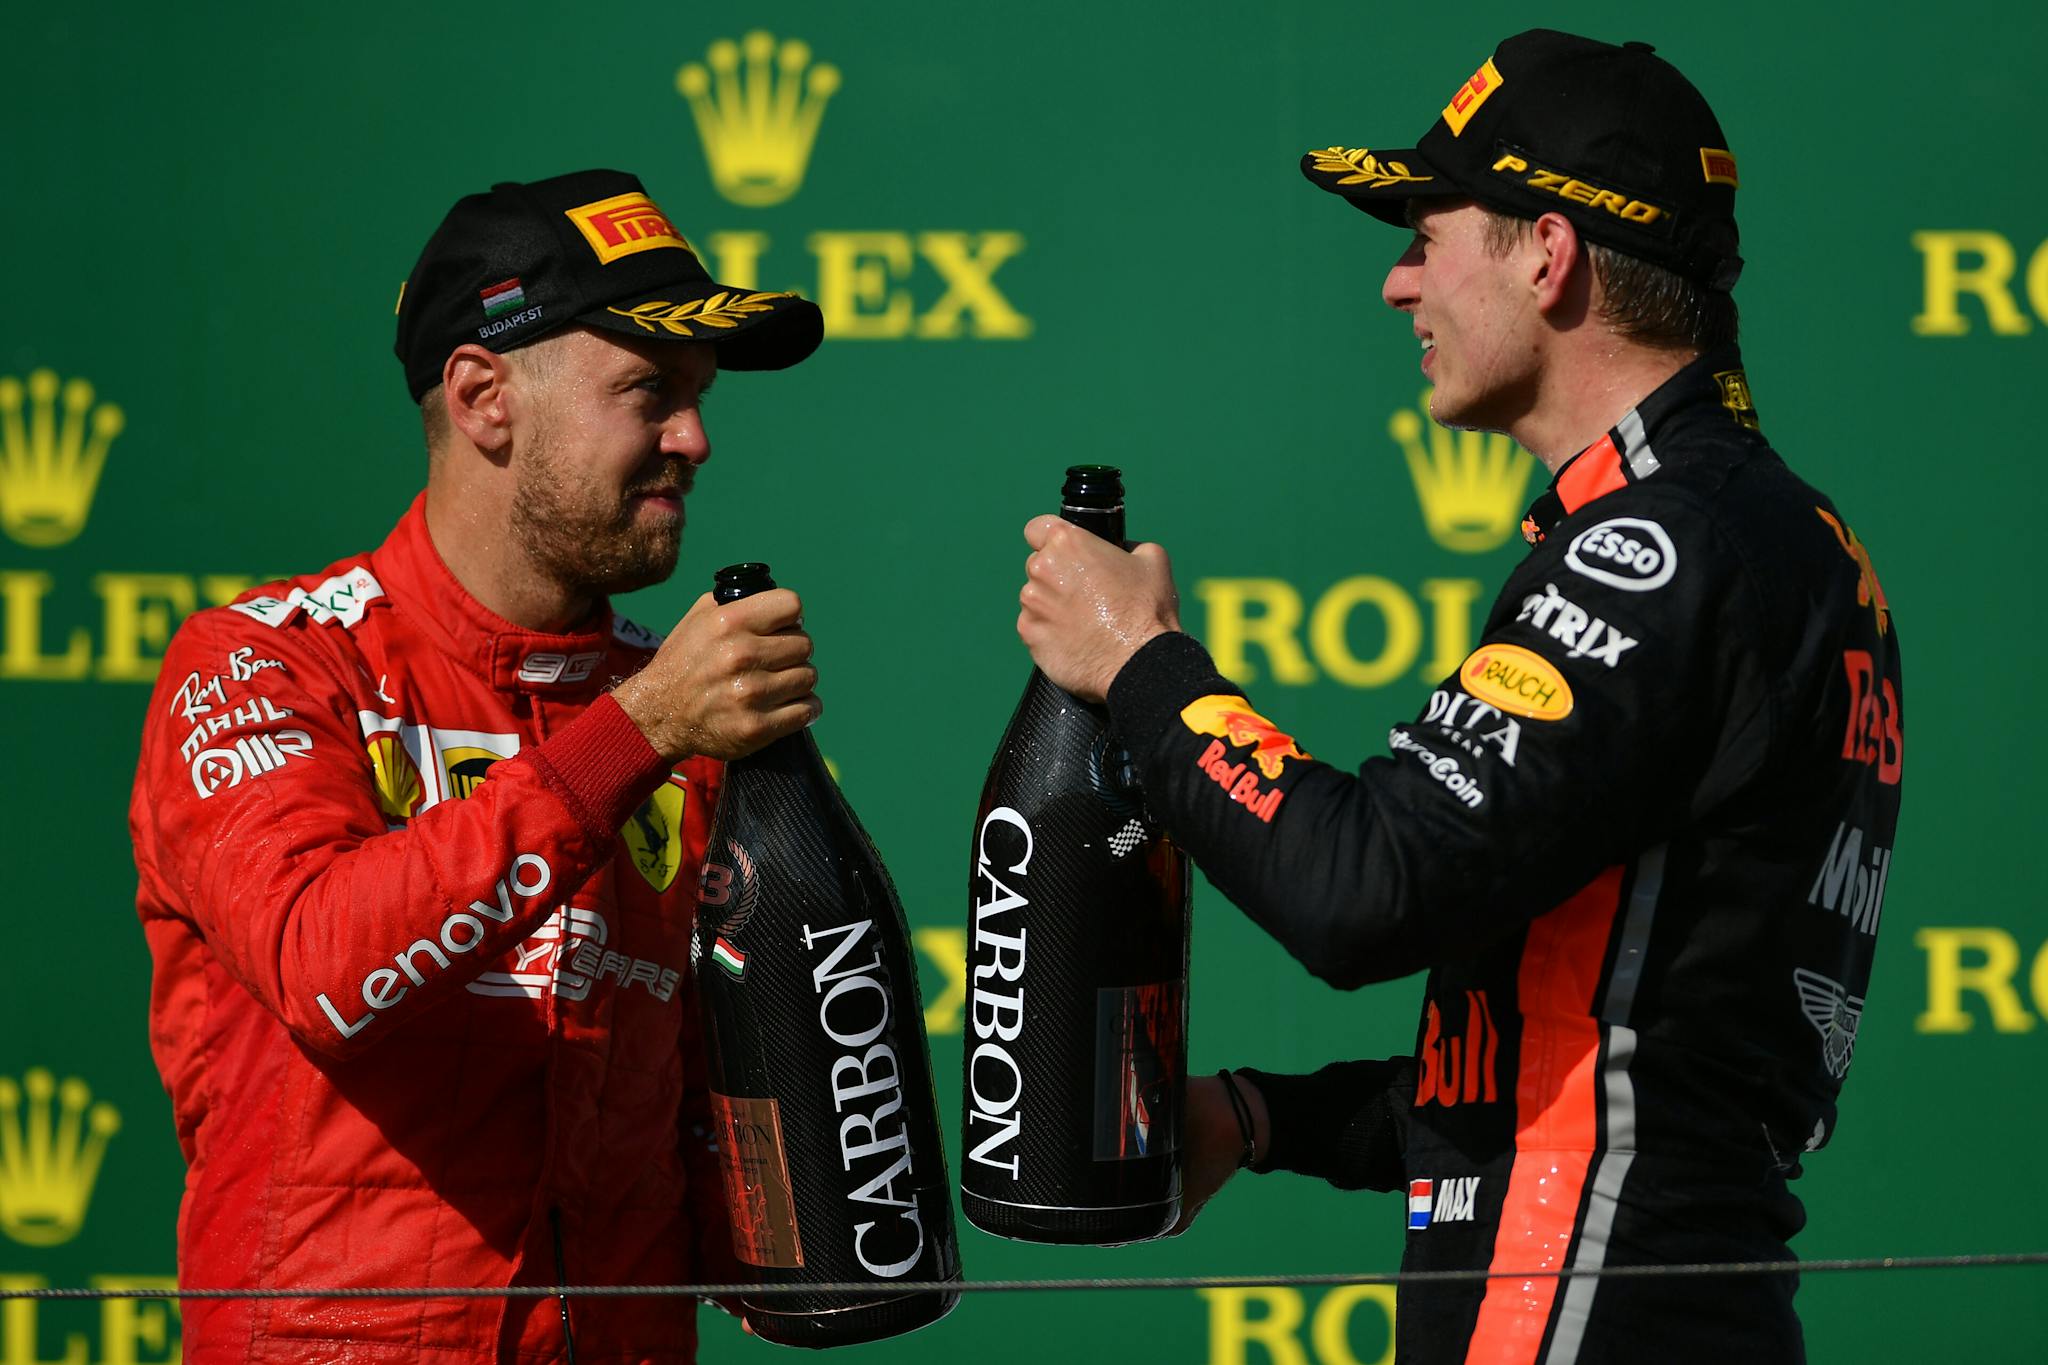 Vettel kibicuje Verstappenowi w walce o rekord zwycięstw z rzędu